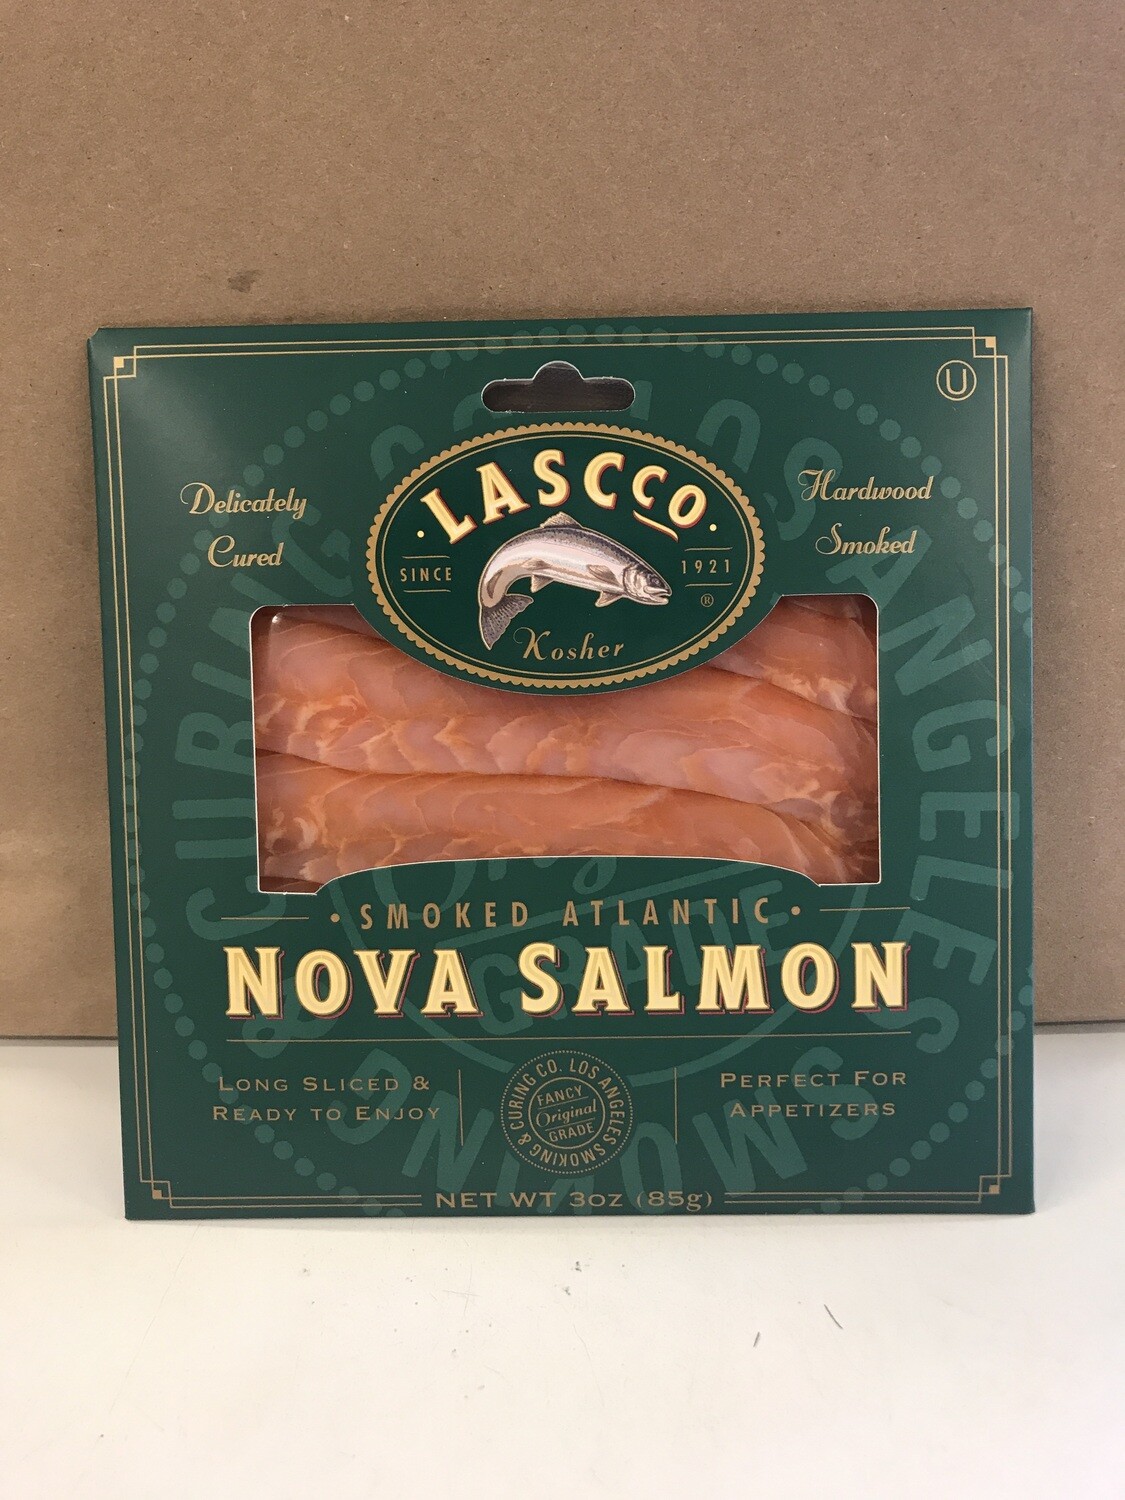 Deli / Meat / Lascco Smoked Salmon